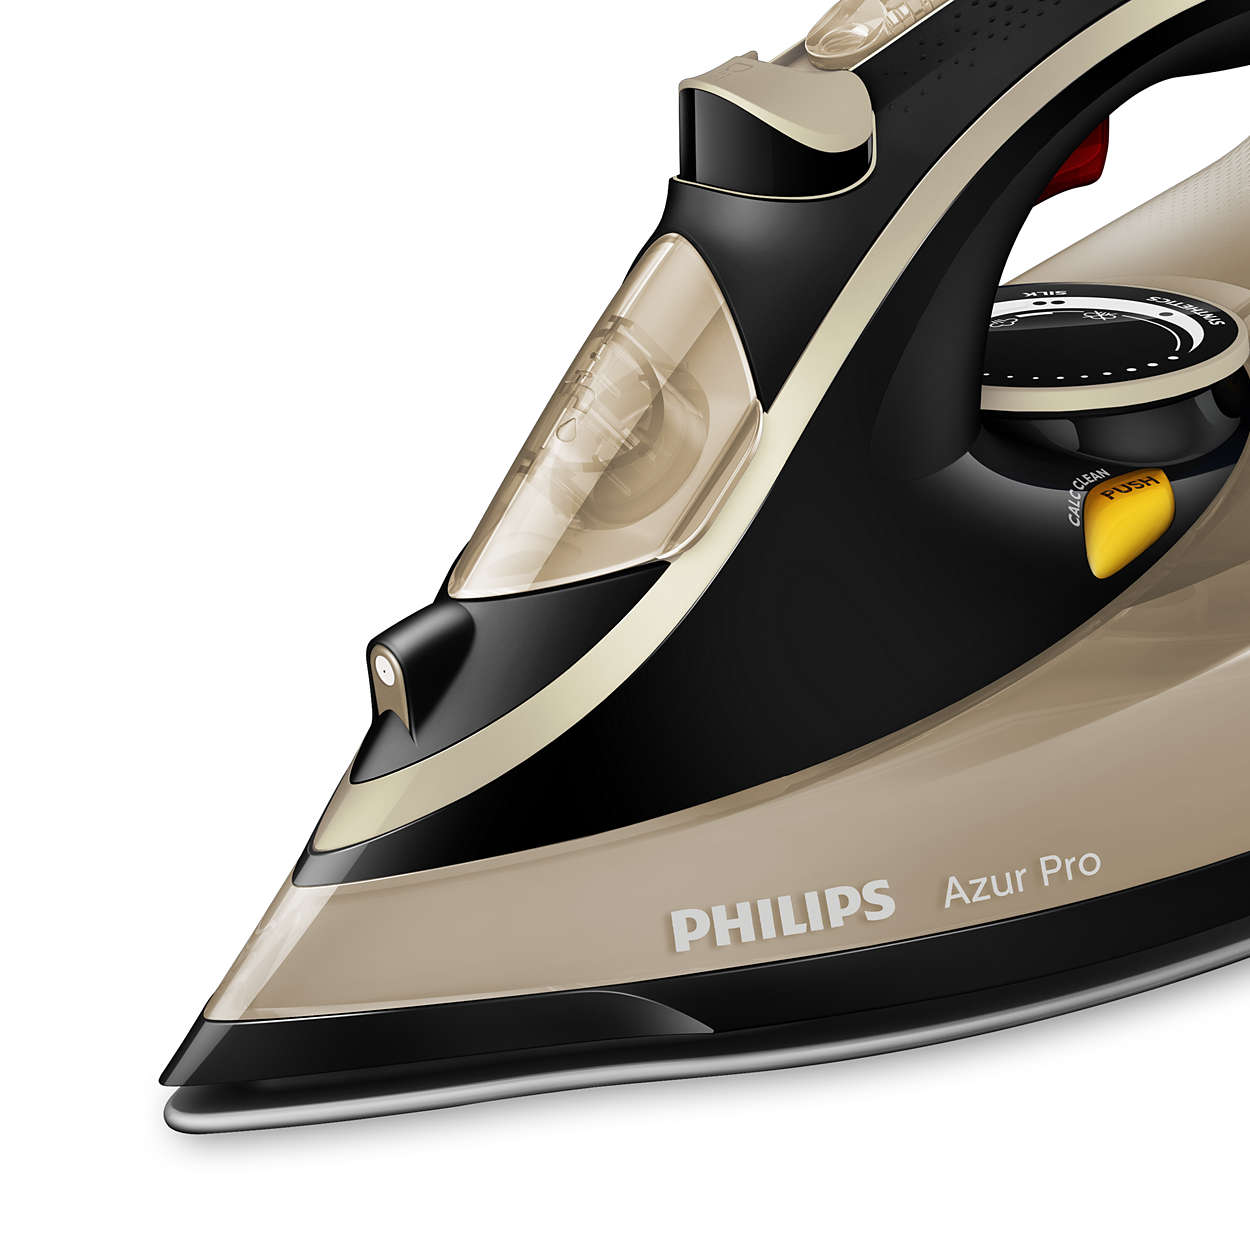 Утюг philips dst7050 70 azur. Утюг Philips Azur Pro 3000w. Philips gc4887/30 Azur Pro. Утюг Филипс Азур. Утюг Филипс Azur Pro 4885.